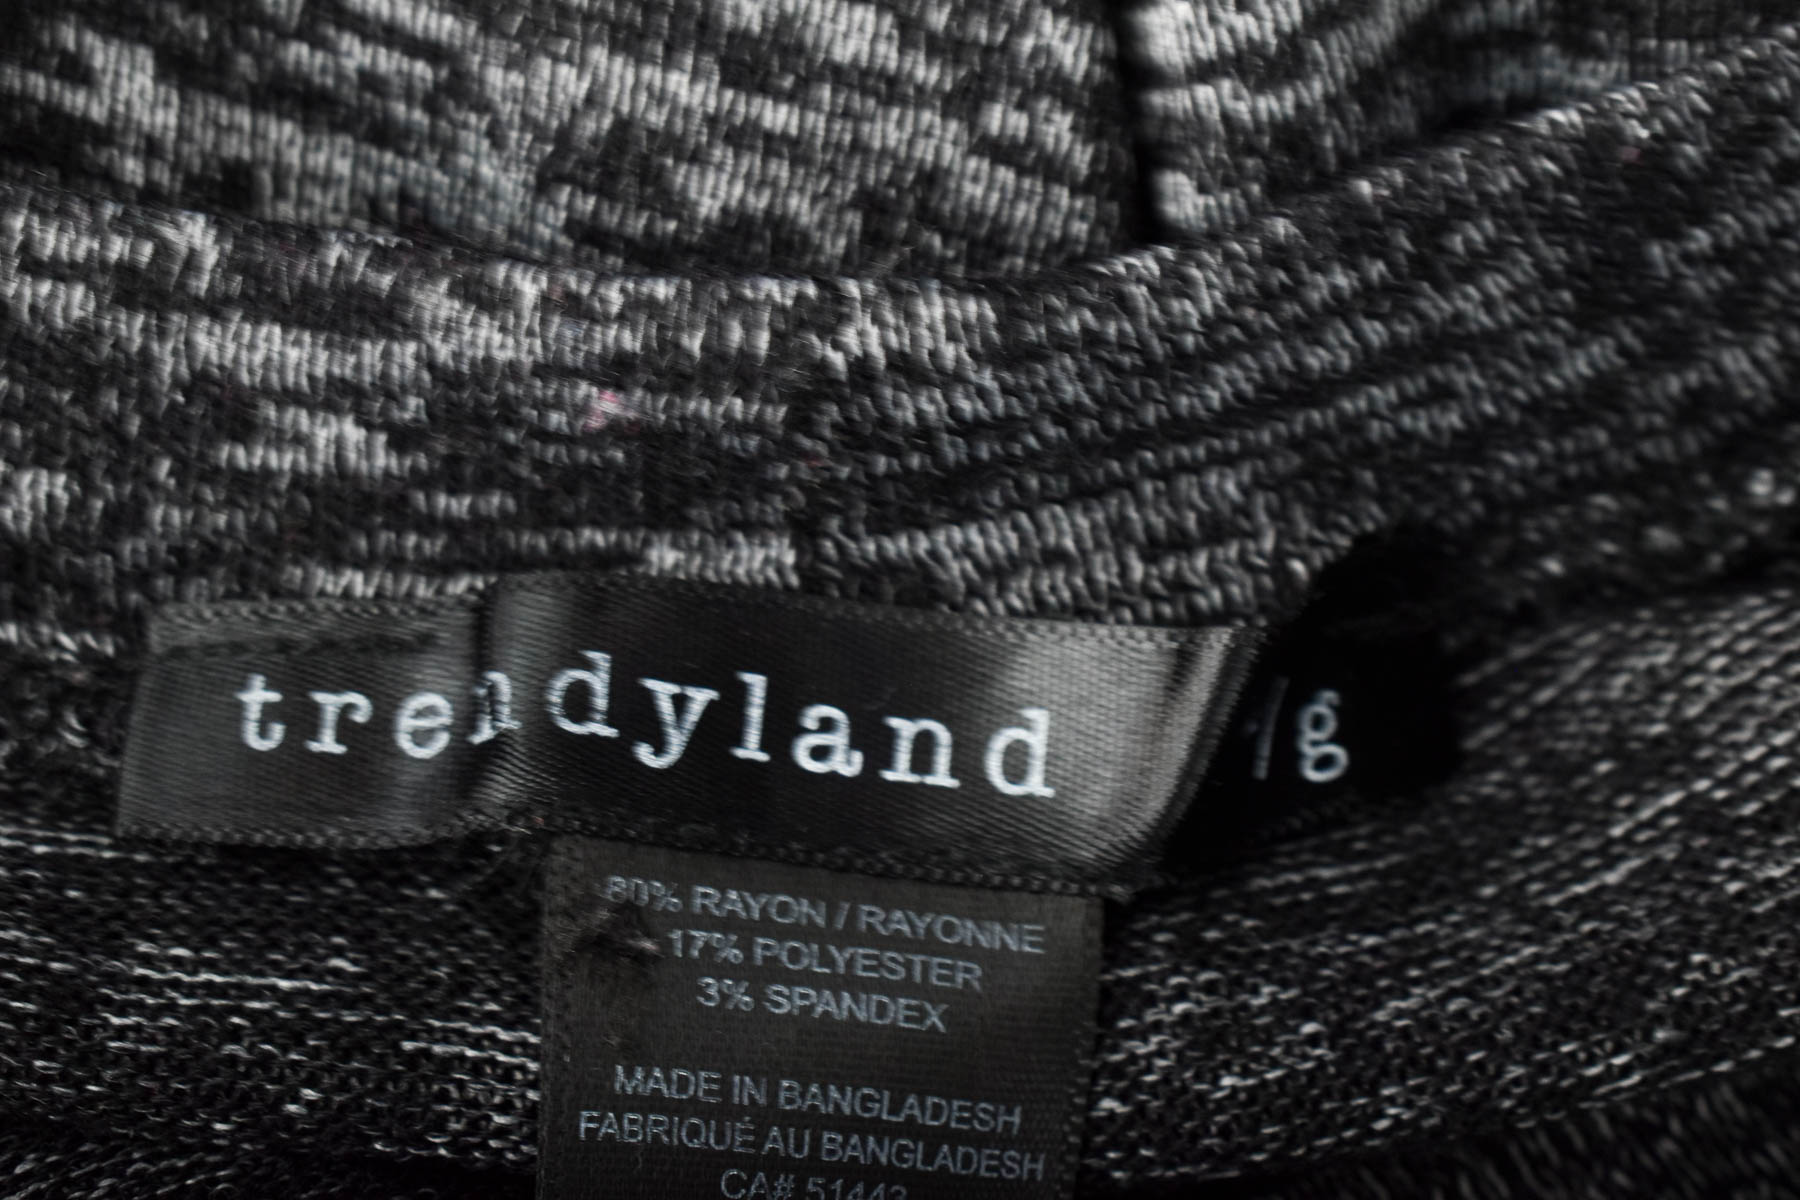 Dress - Trendyland - 2